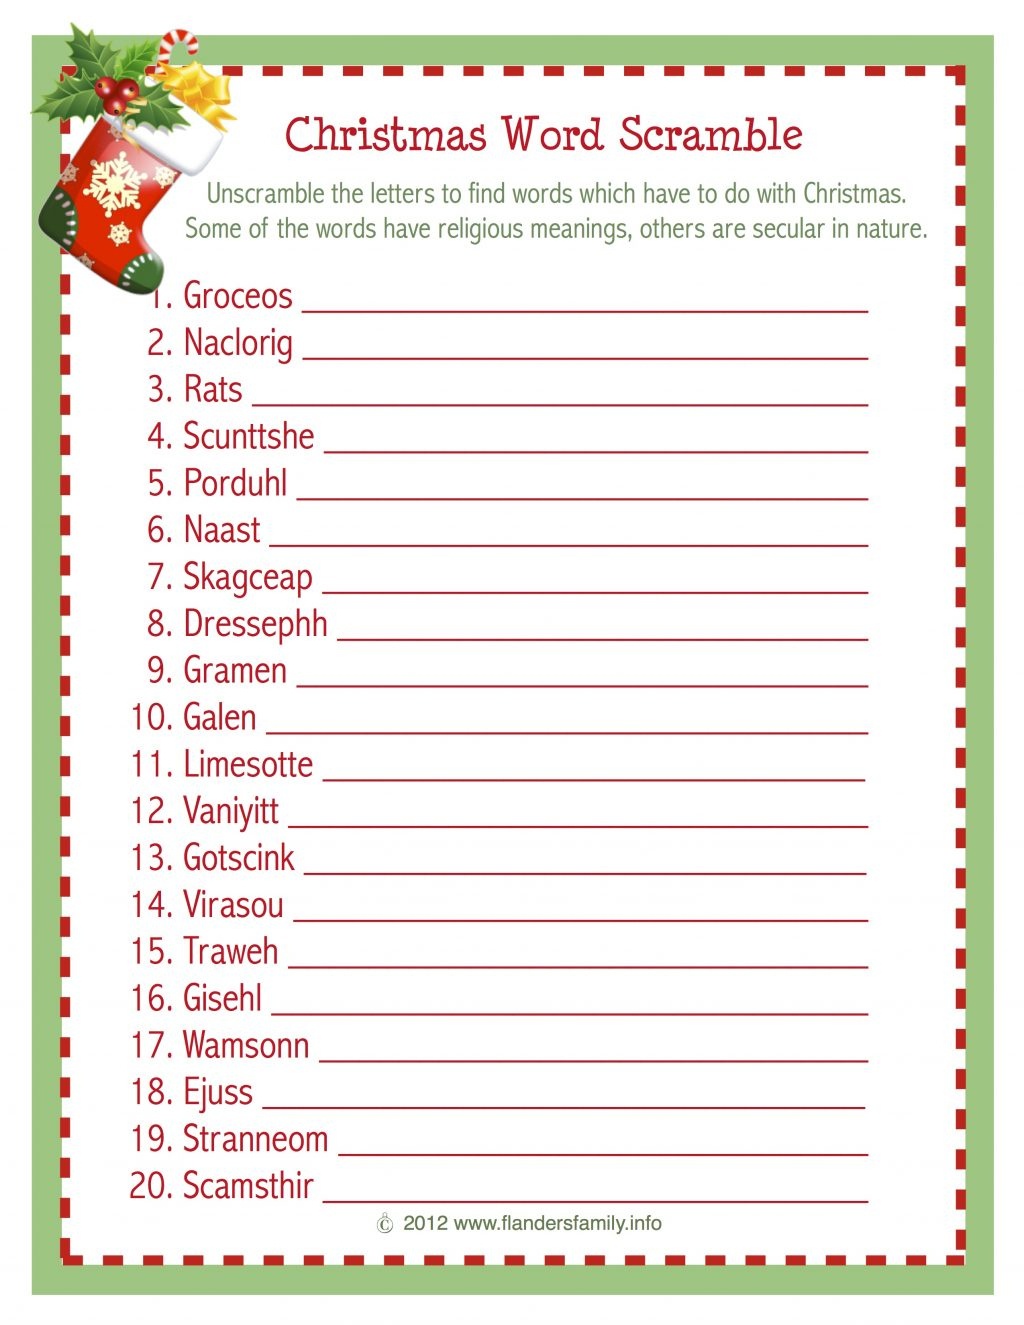 Christmas Word Scramble (Free Printable) - Flanders Family Homelife - Christmas Song Lyrics Game Free Printable